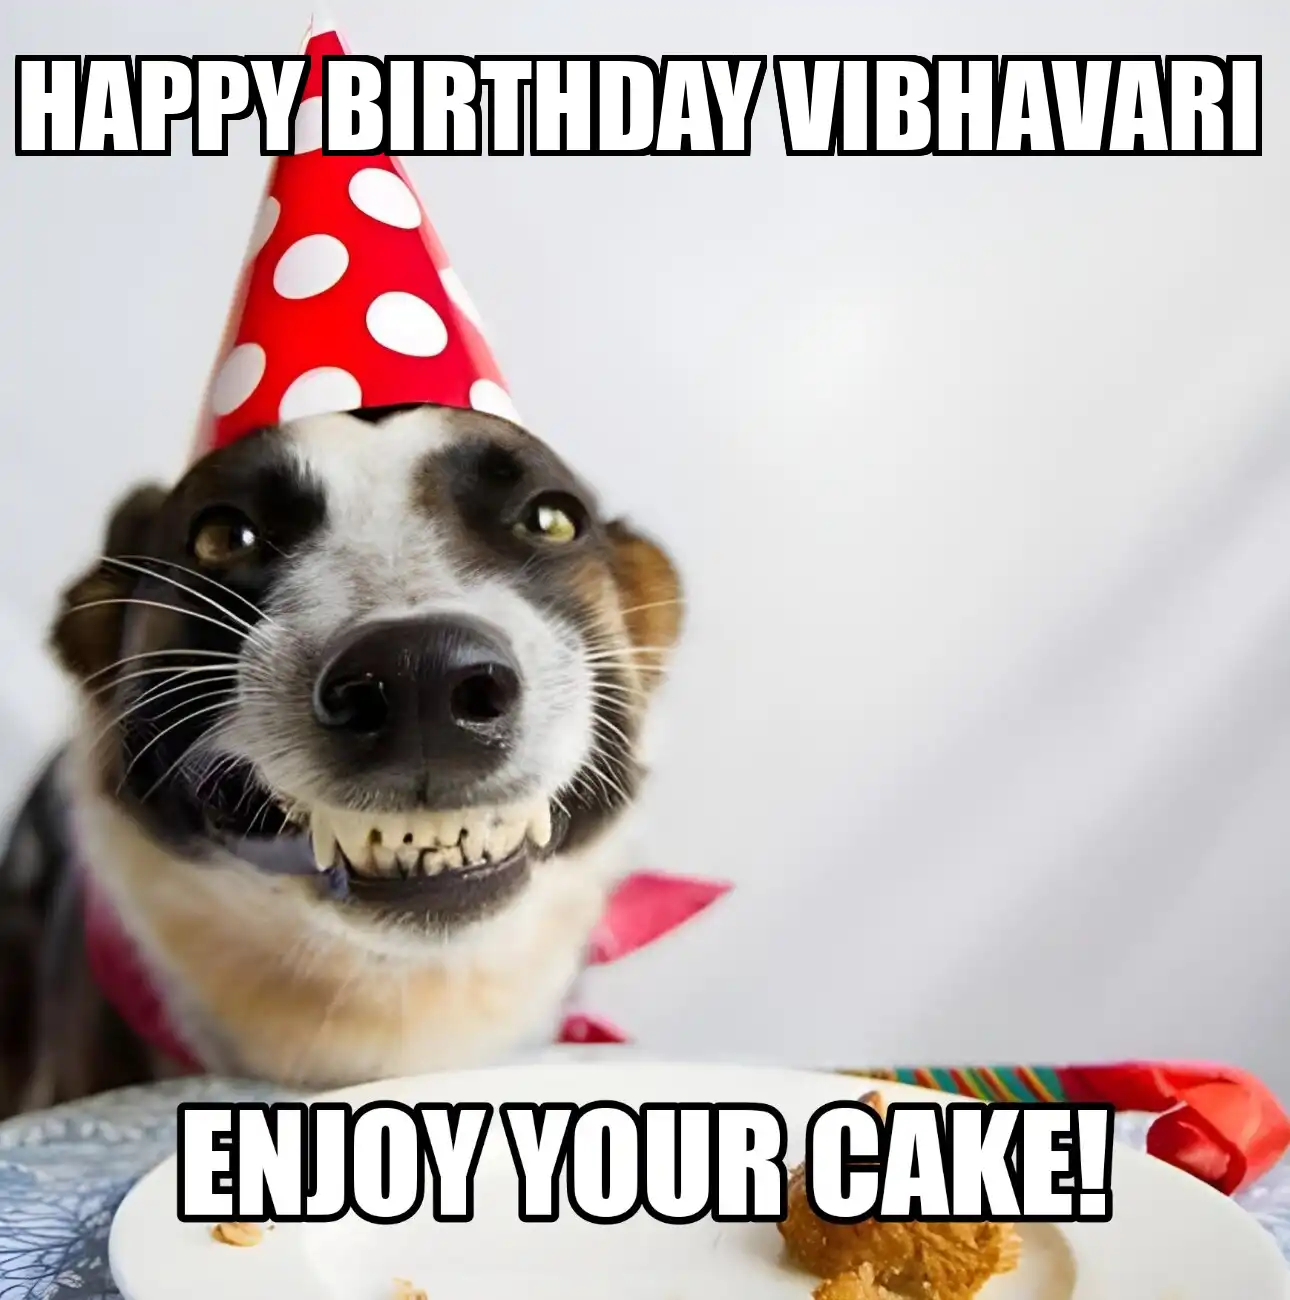 Happy Birthday Vibhavari Enjoy Your Cake Dog Meme